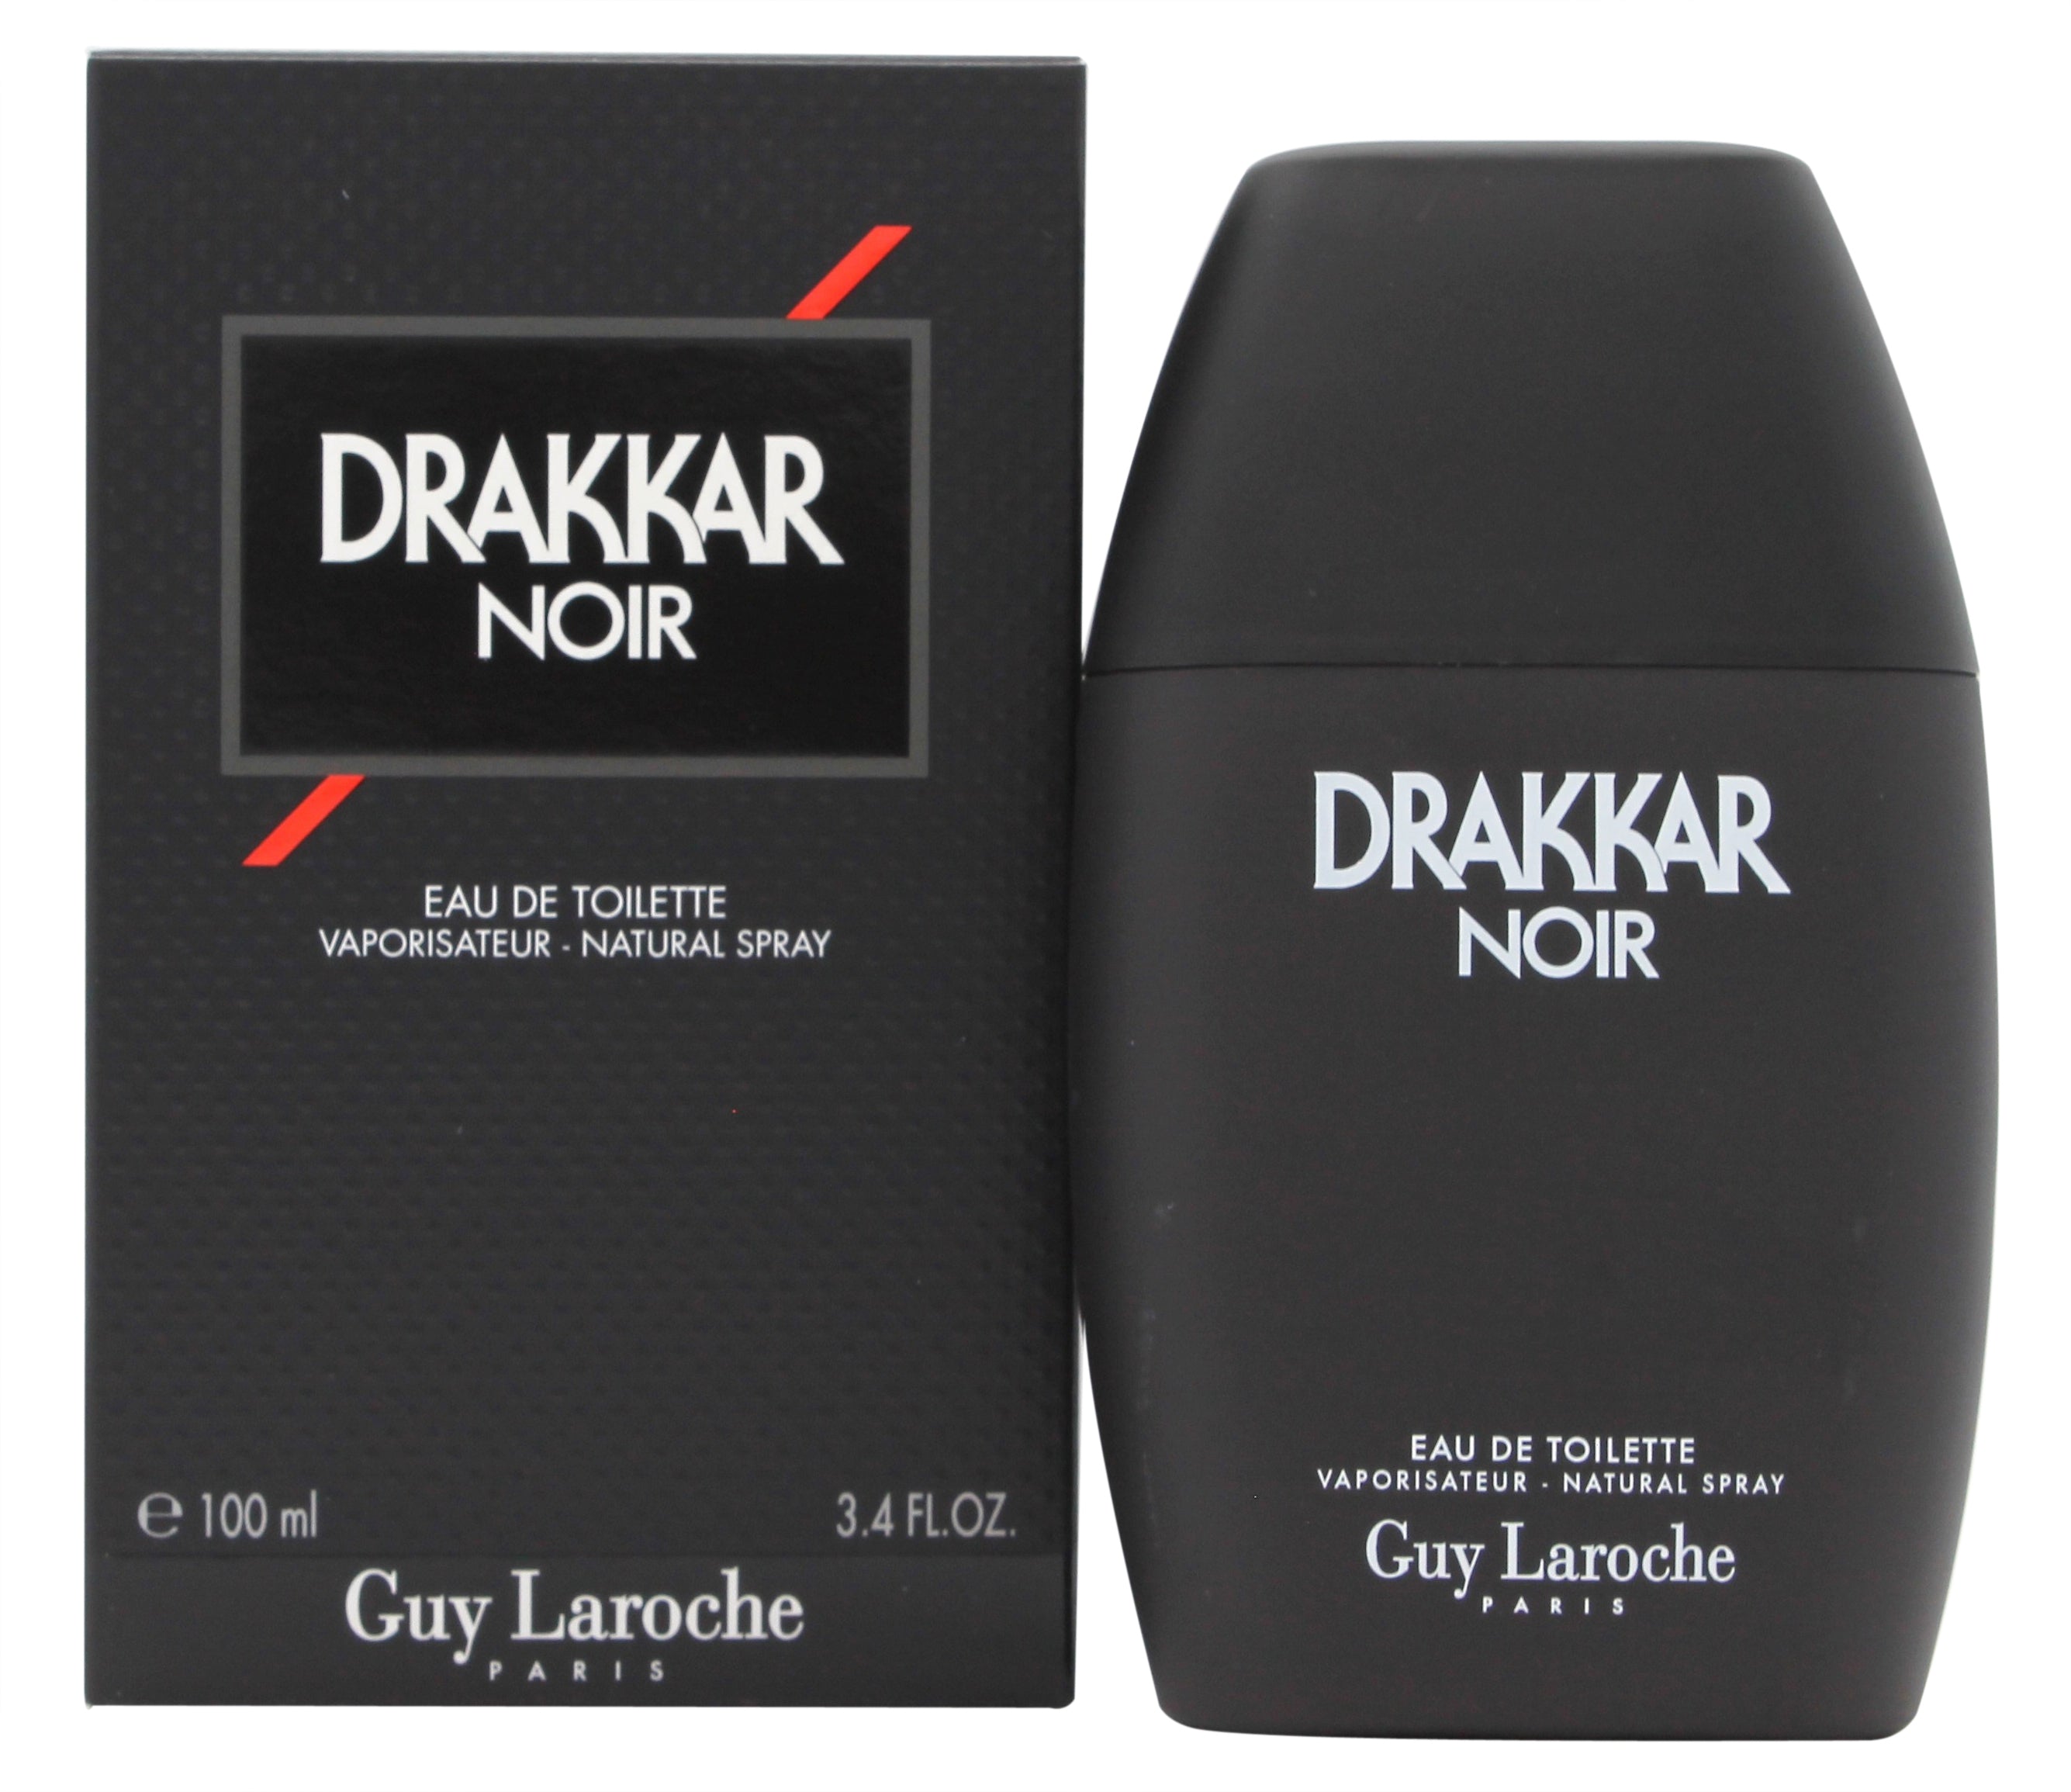 View Guy Laroche Drakkar Noir Eau de Toilette 100ml Spray information